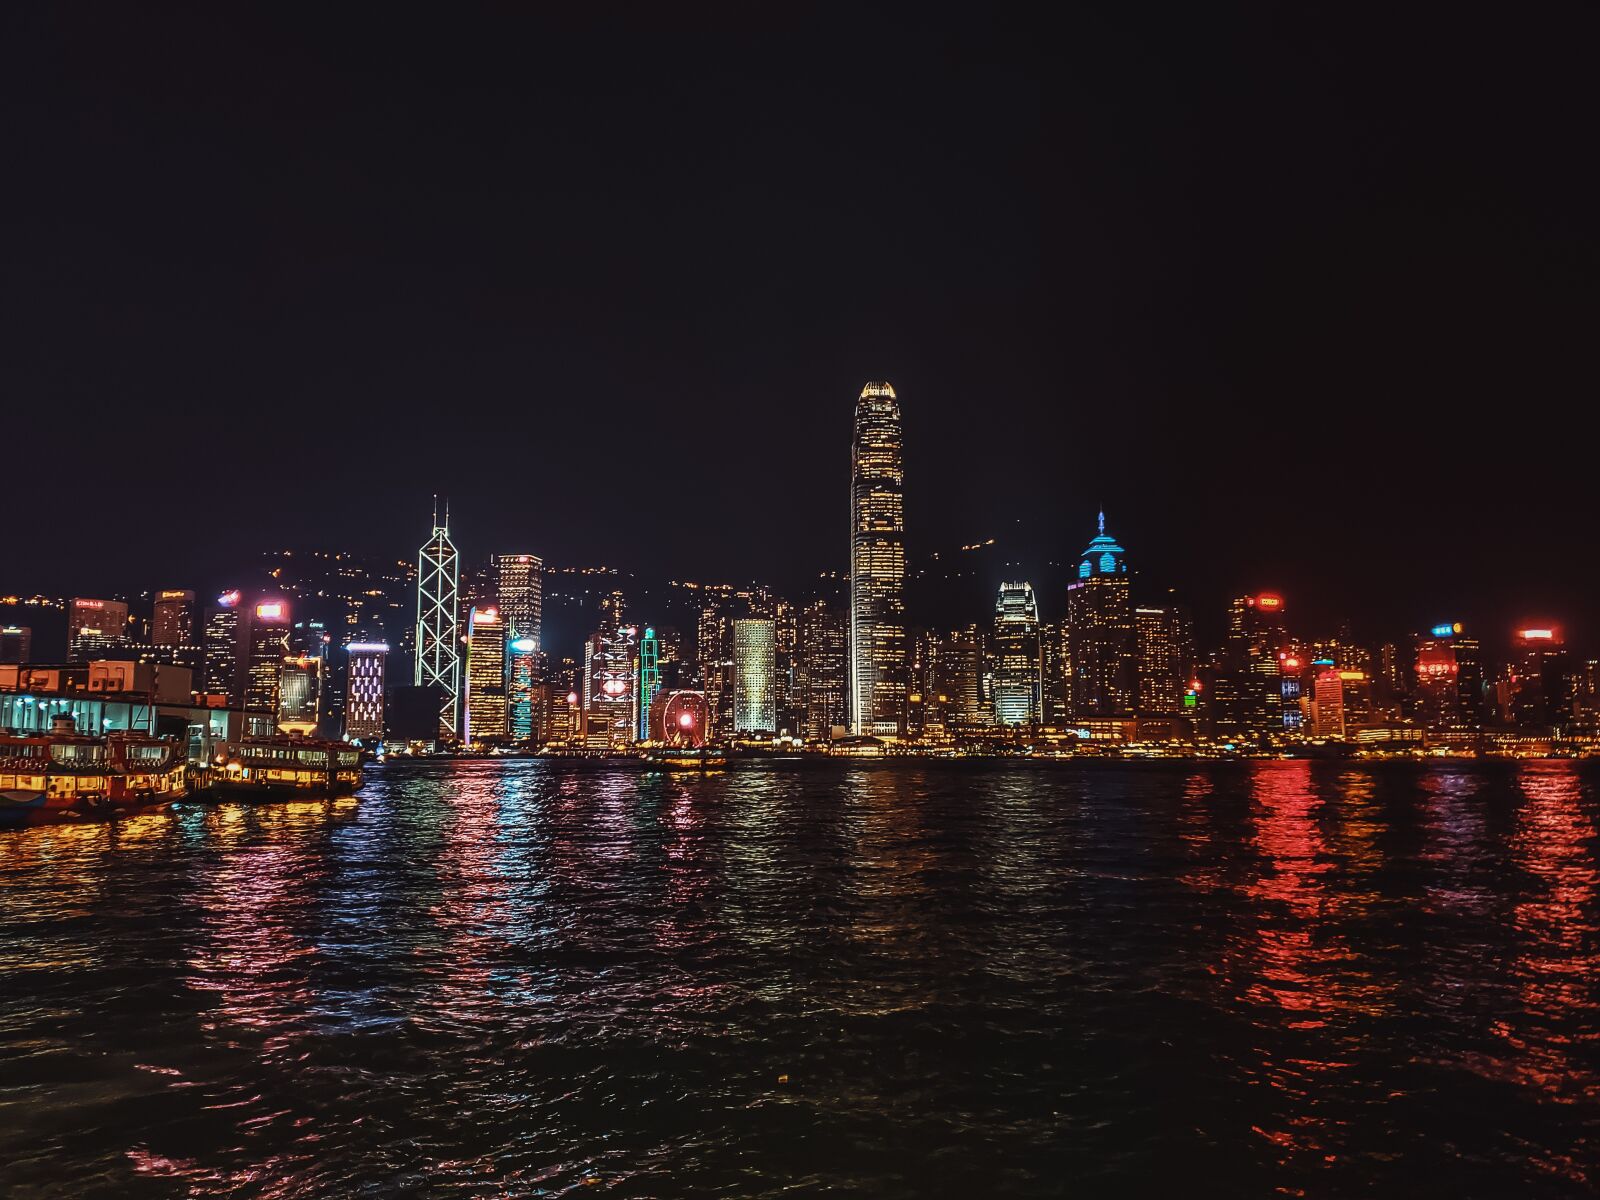 Samsung Galaxy S9+ Rear Camera sample photo. Hongkong, city, urban photography